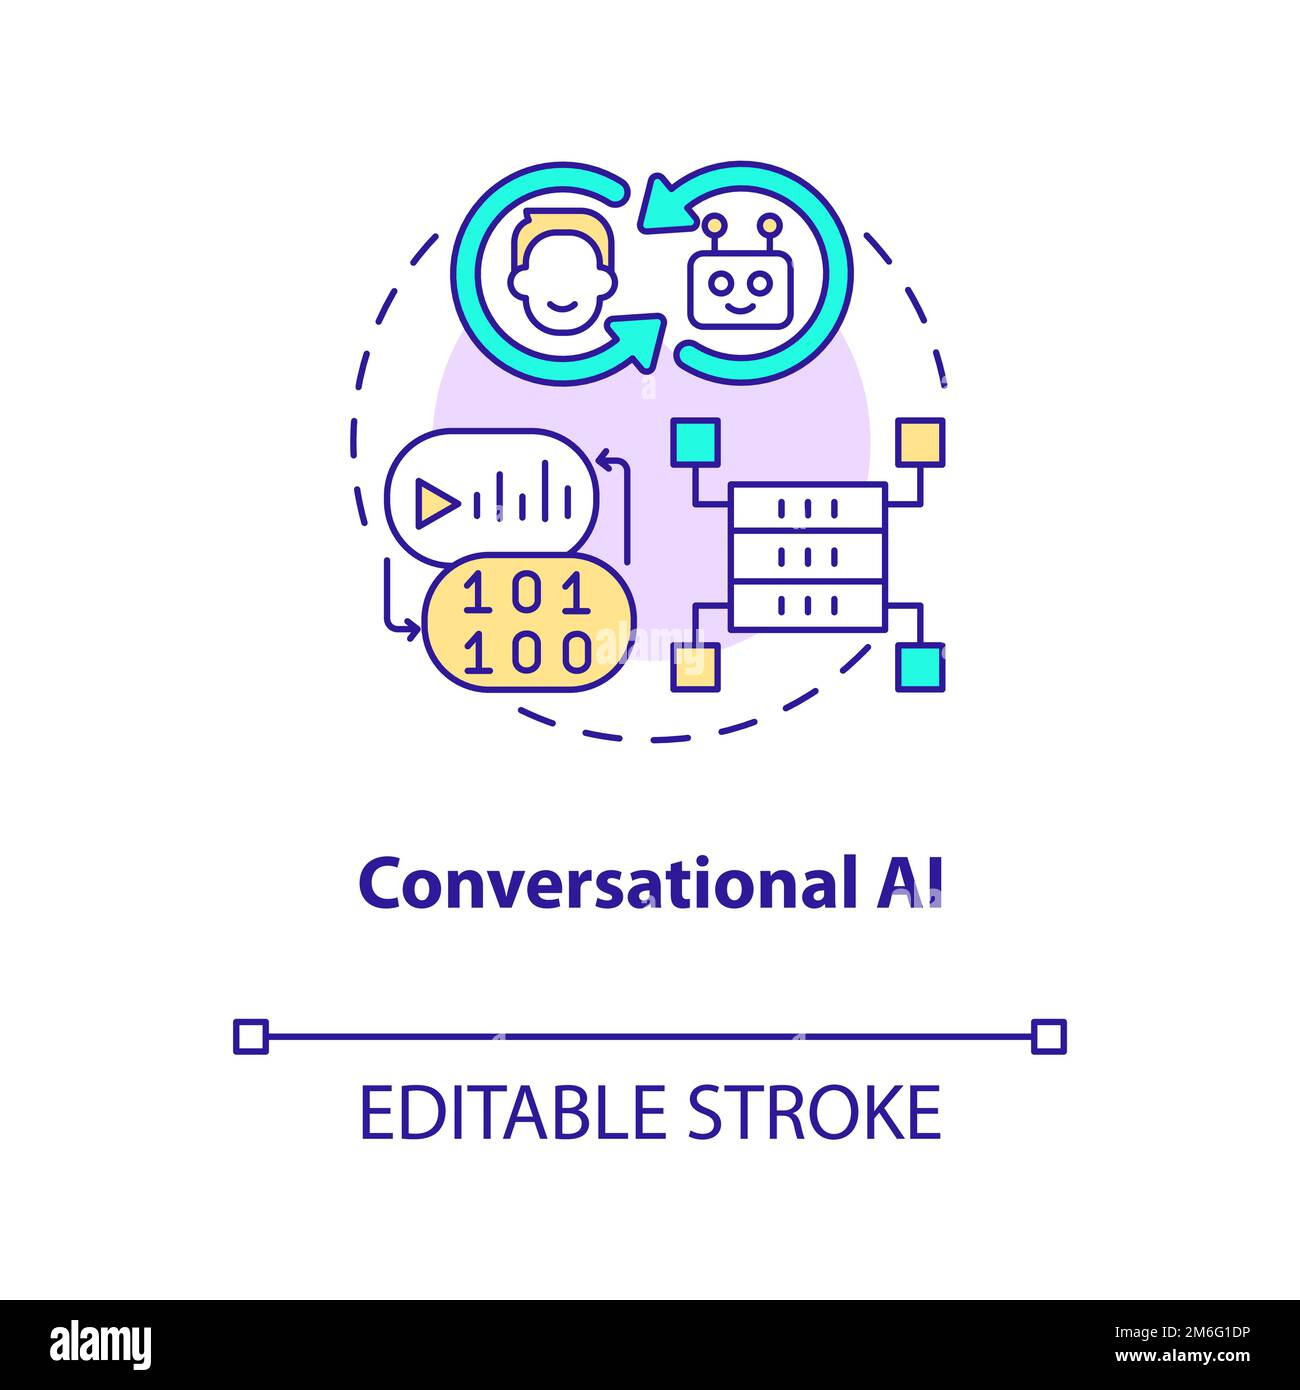 Conversational AI concept icon Stock Vector